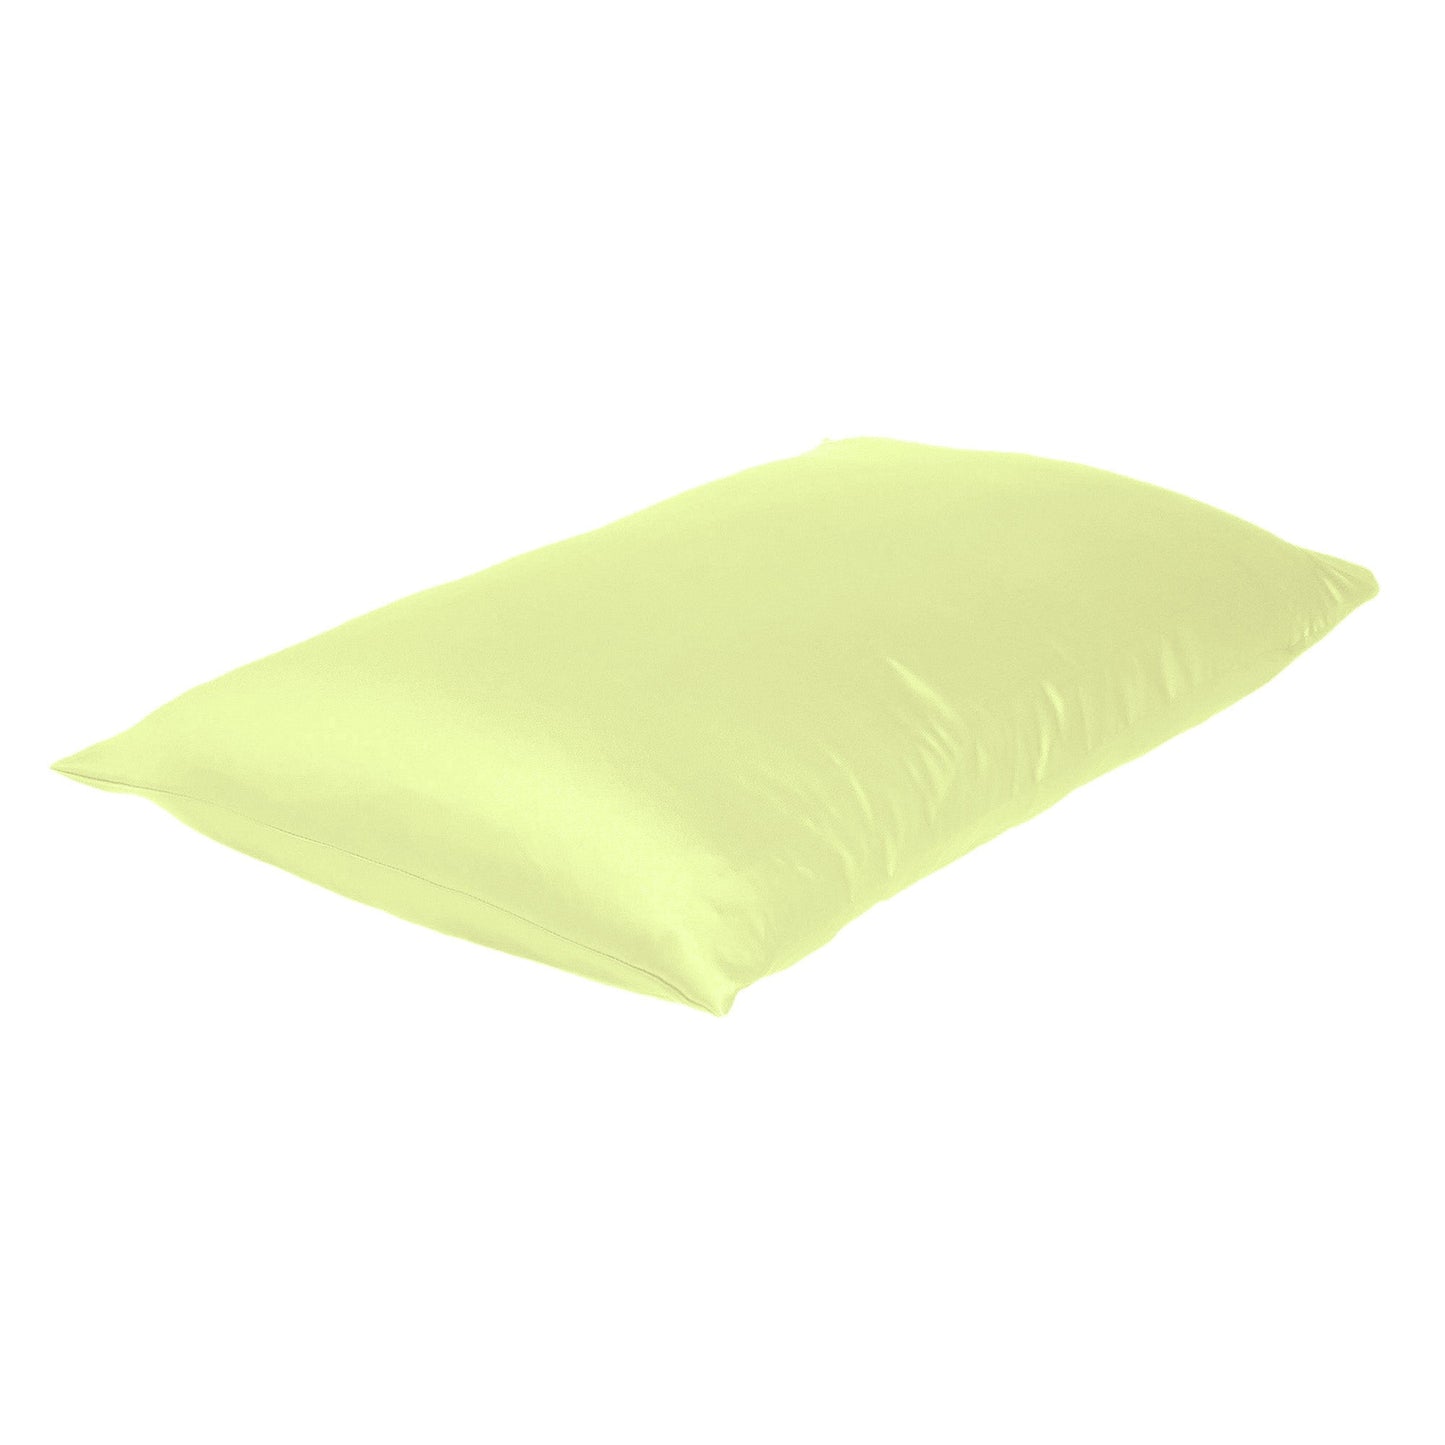 Luxury Soft Plain Satin Silk Pillowcases in Set of 2 - Lemon Grass